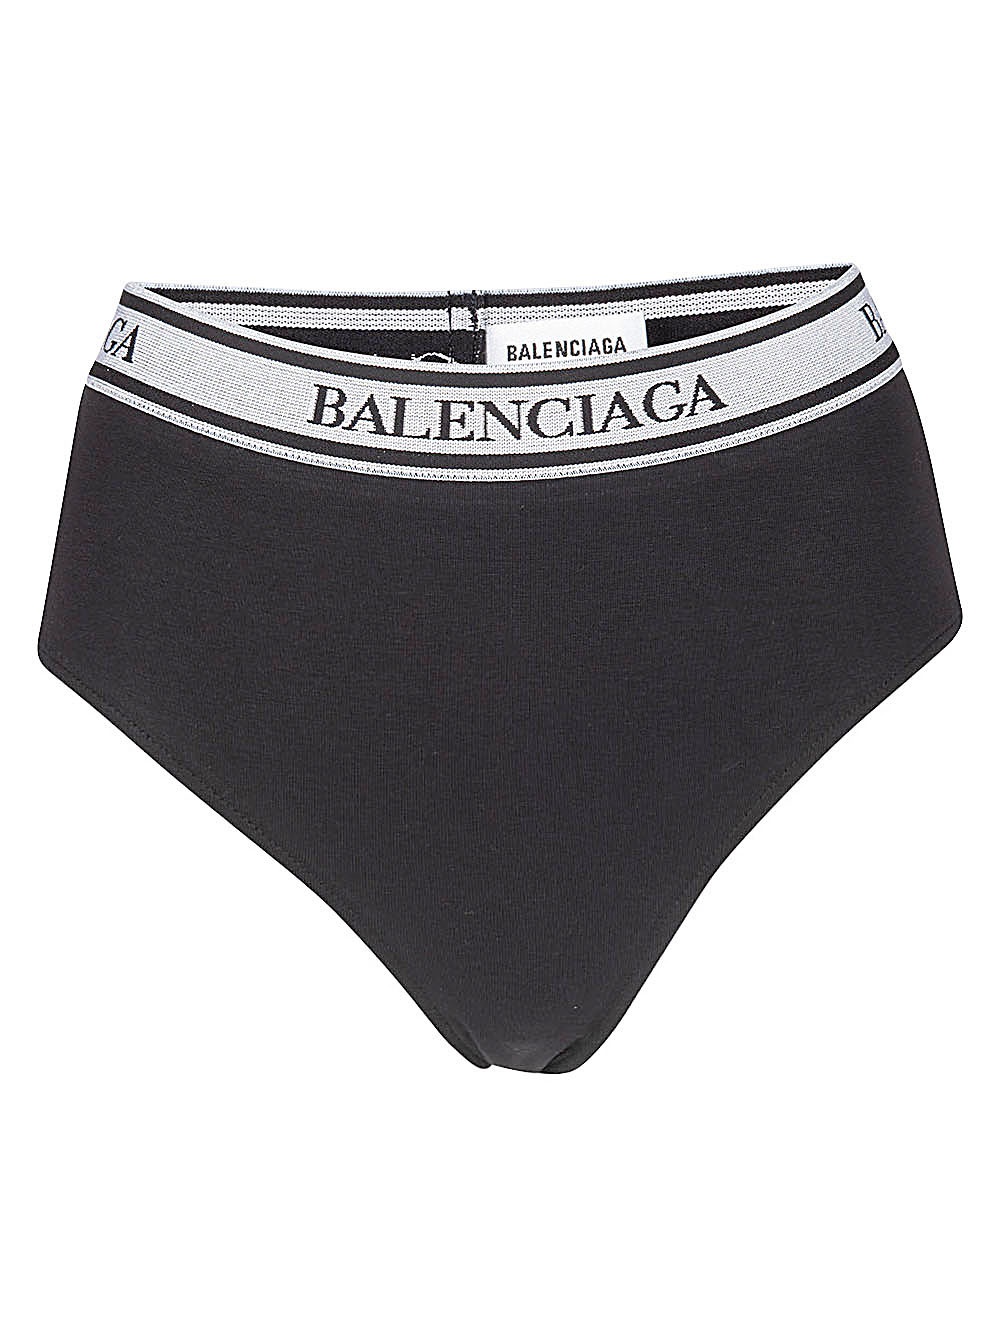 BALENCIAGA - Organic Cotton Briefs Balenciaga